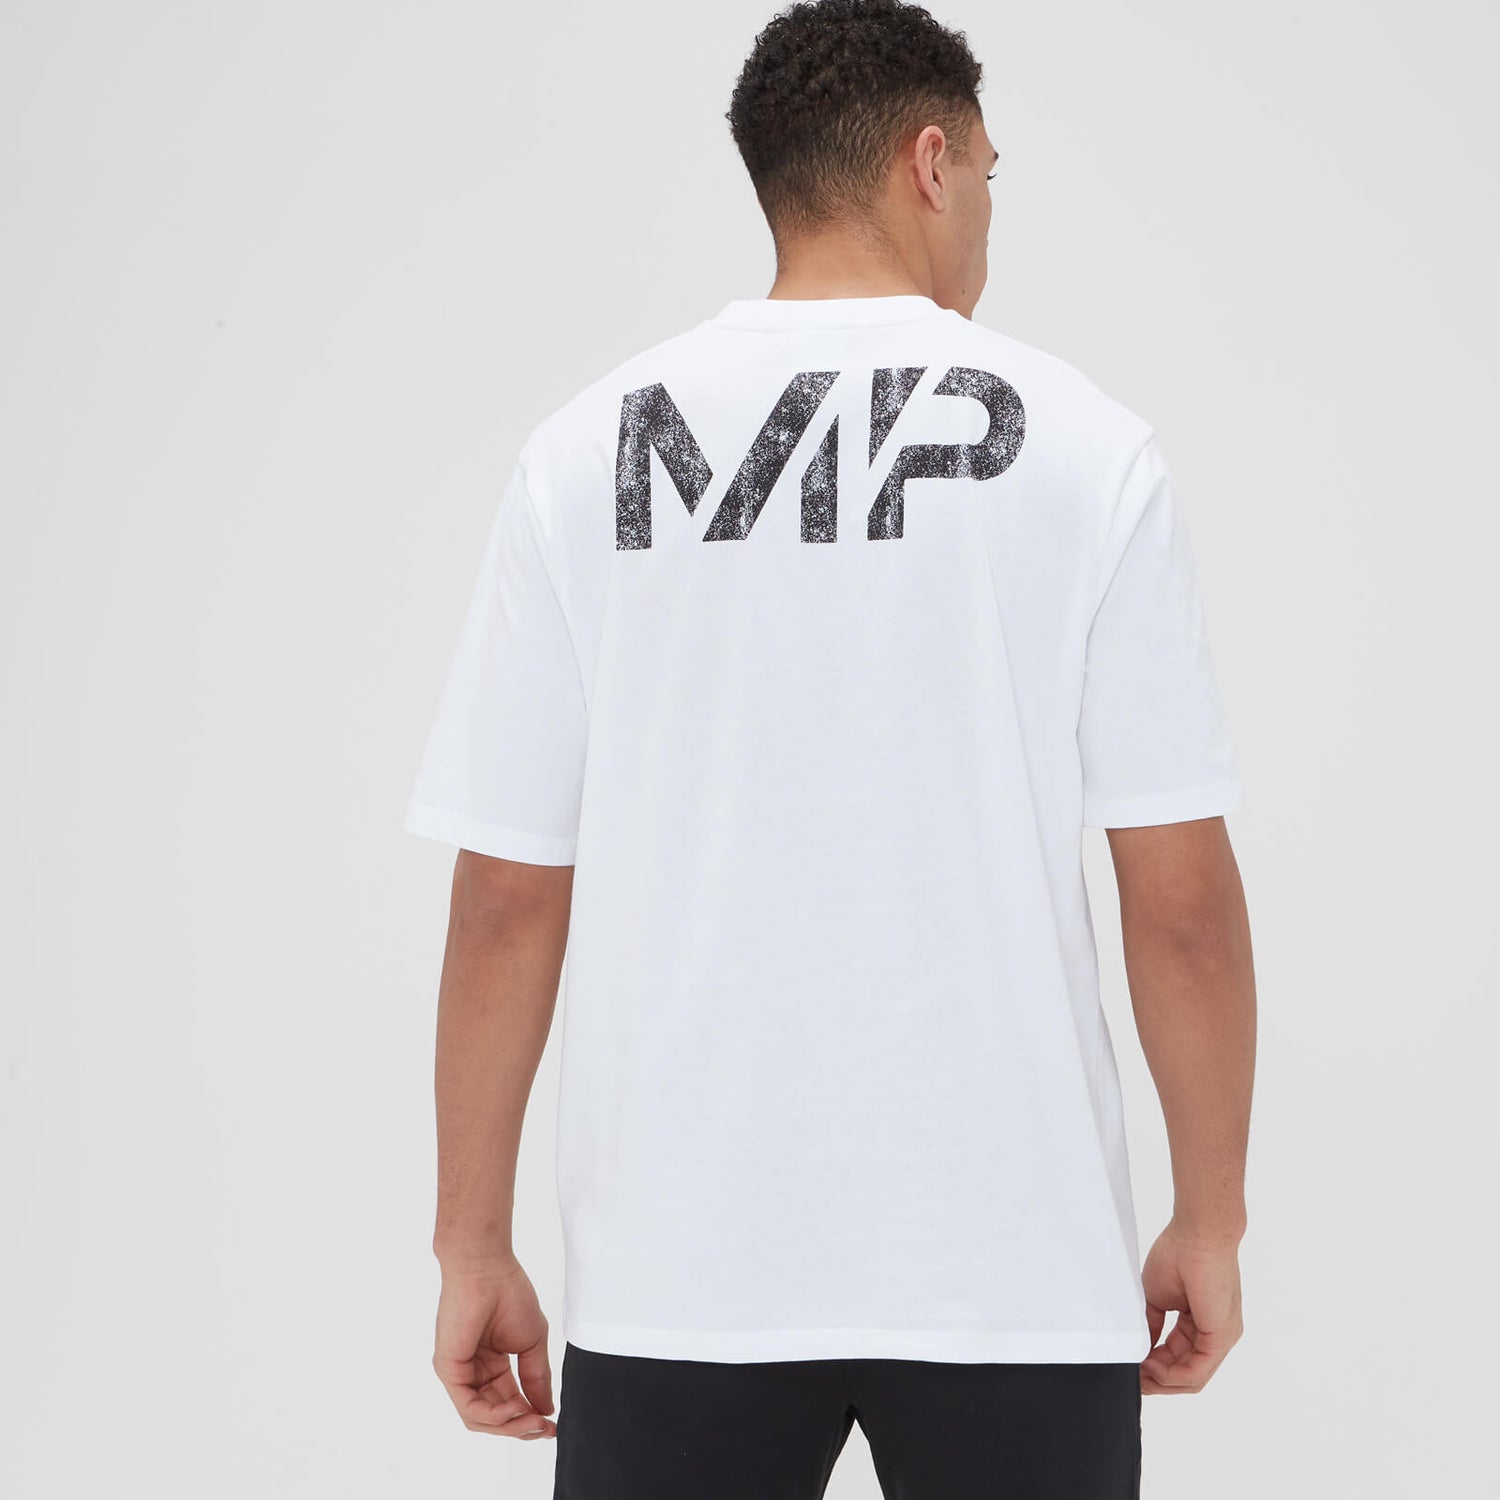 Camiseta extragrande con gráfico efecto arena para hombre de MP - Blanco - XL